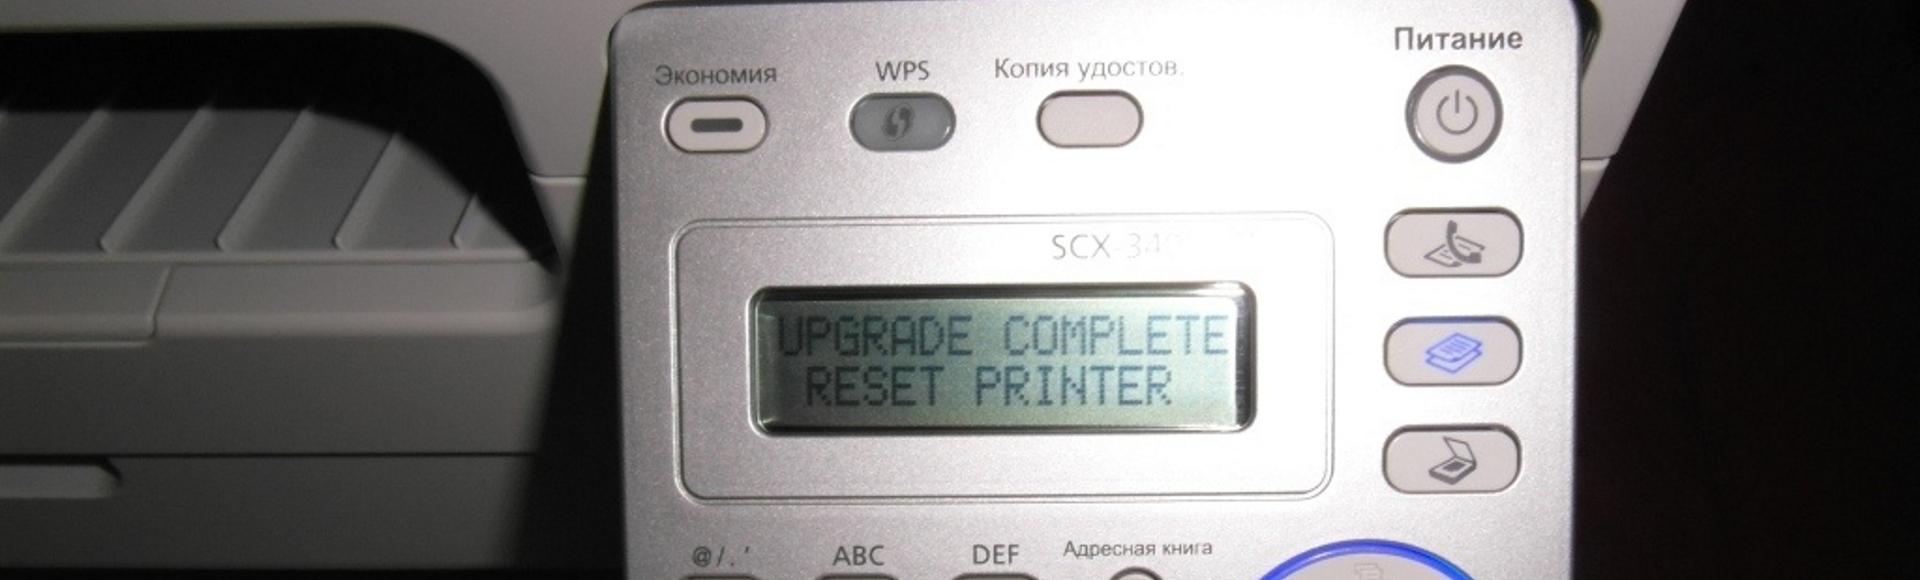 Прошивка принтеров